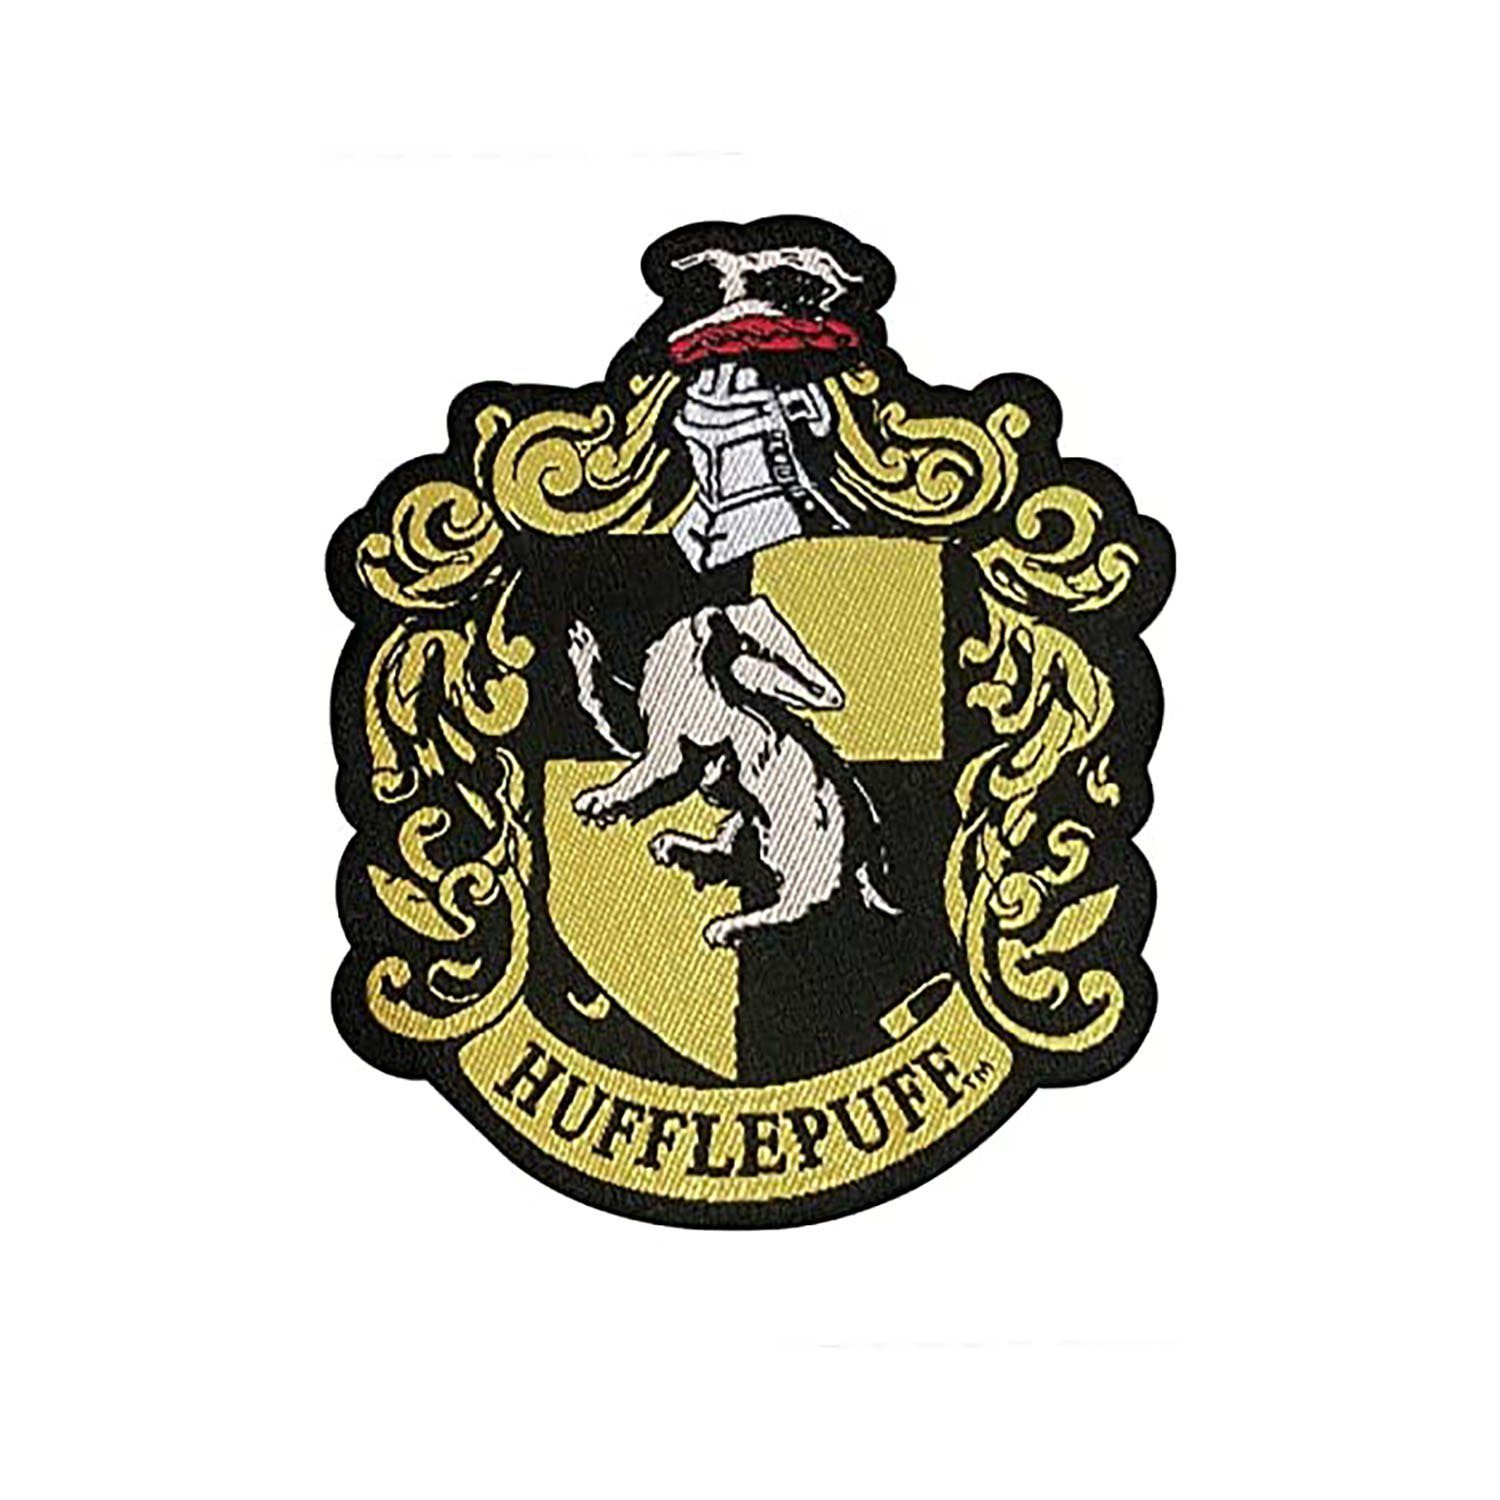 Harry Potter Strickmütze Harry gelb zum Potter Hufflepuff - Mütze Stricken